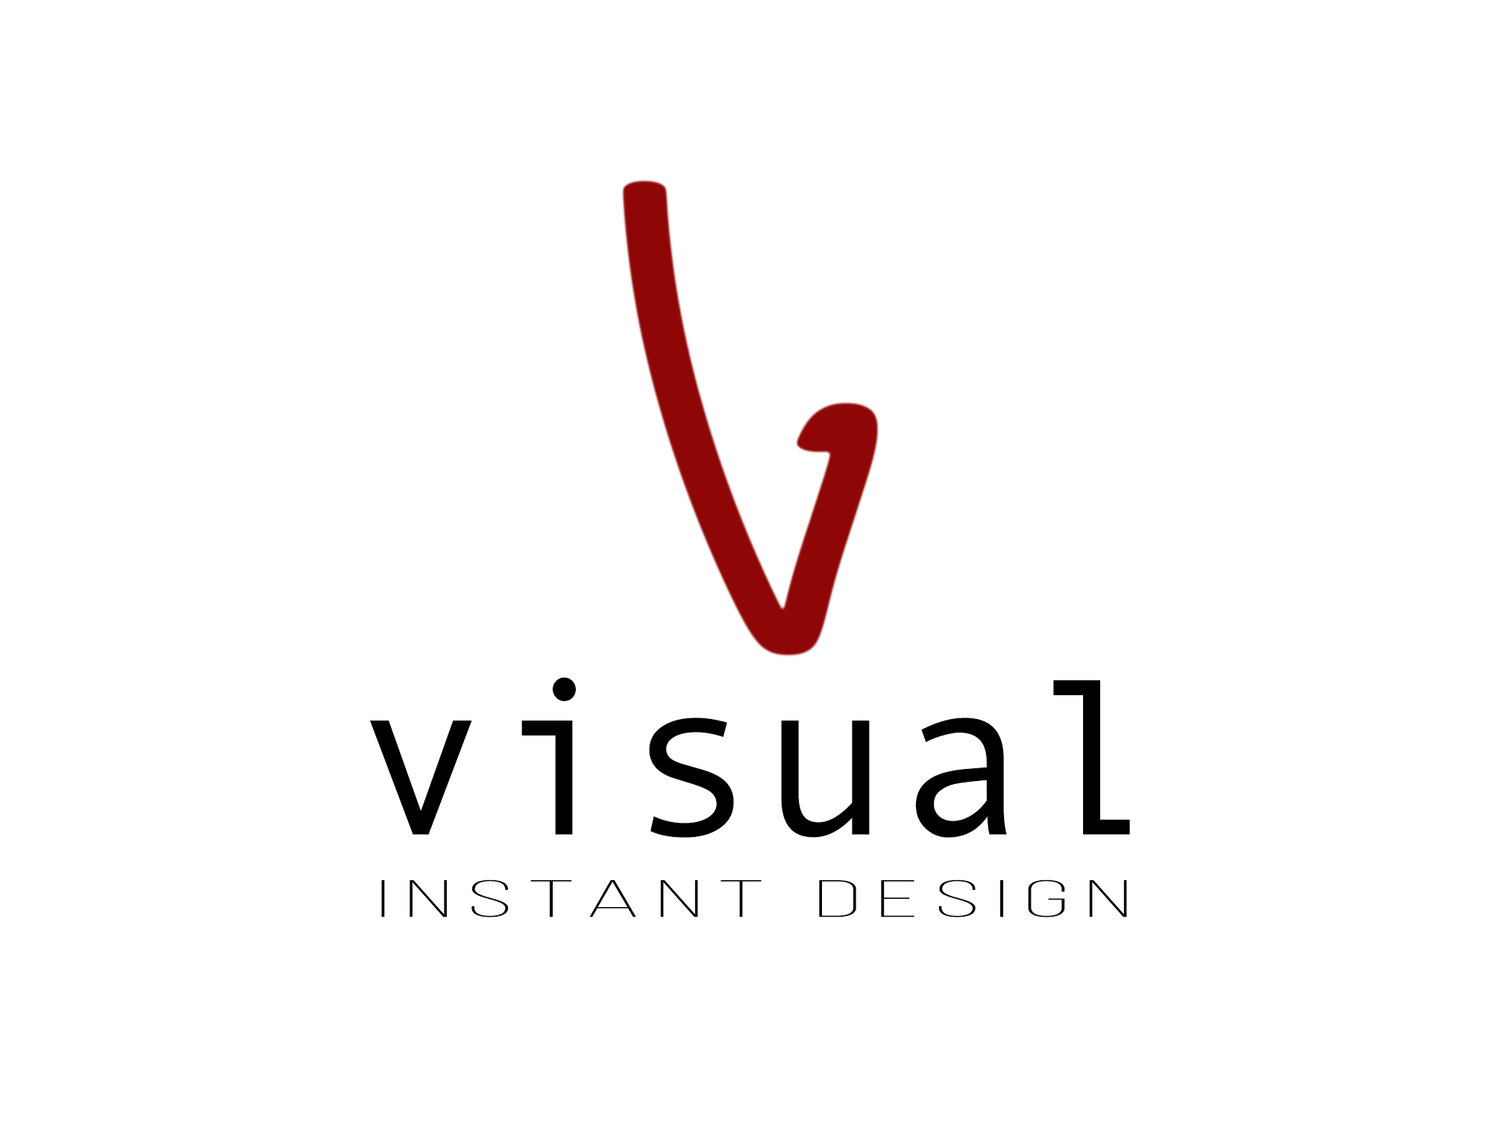 Visual Instant Design